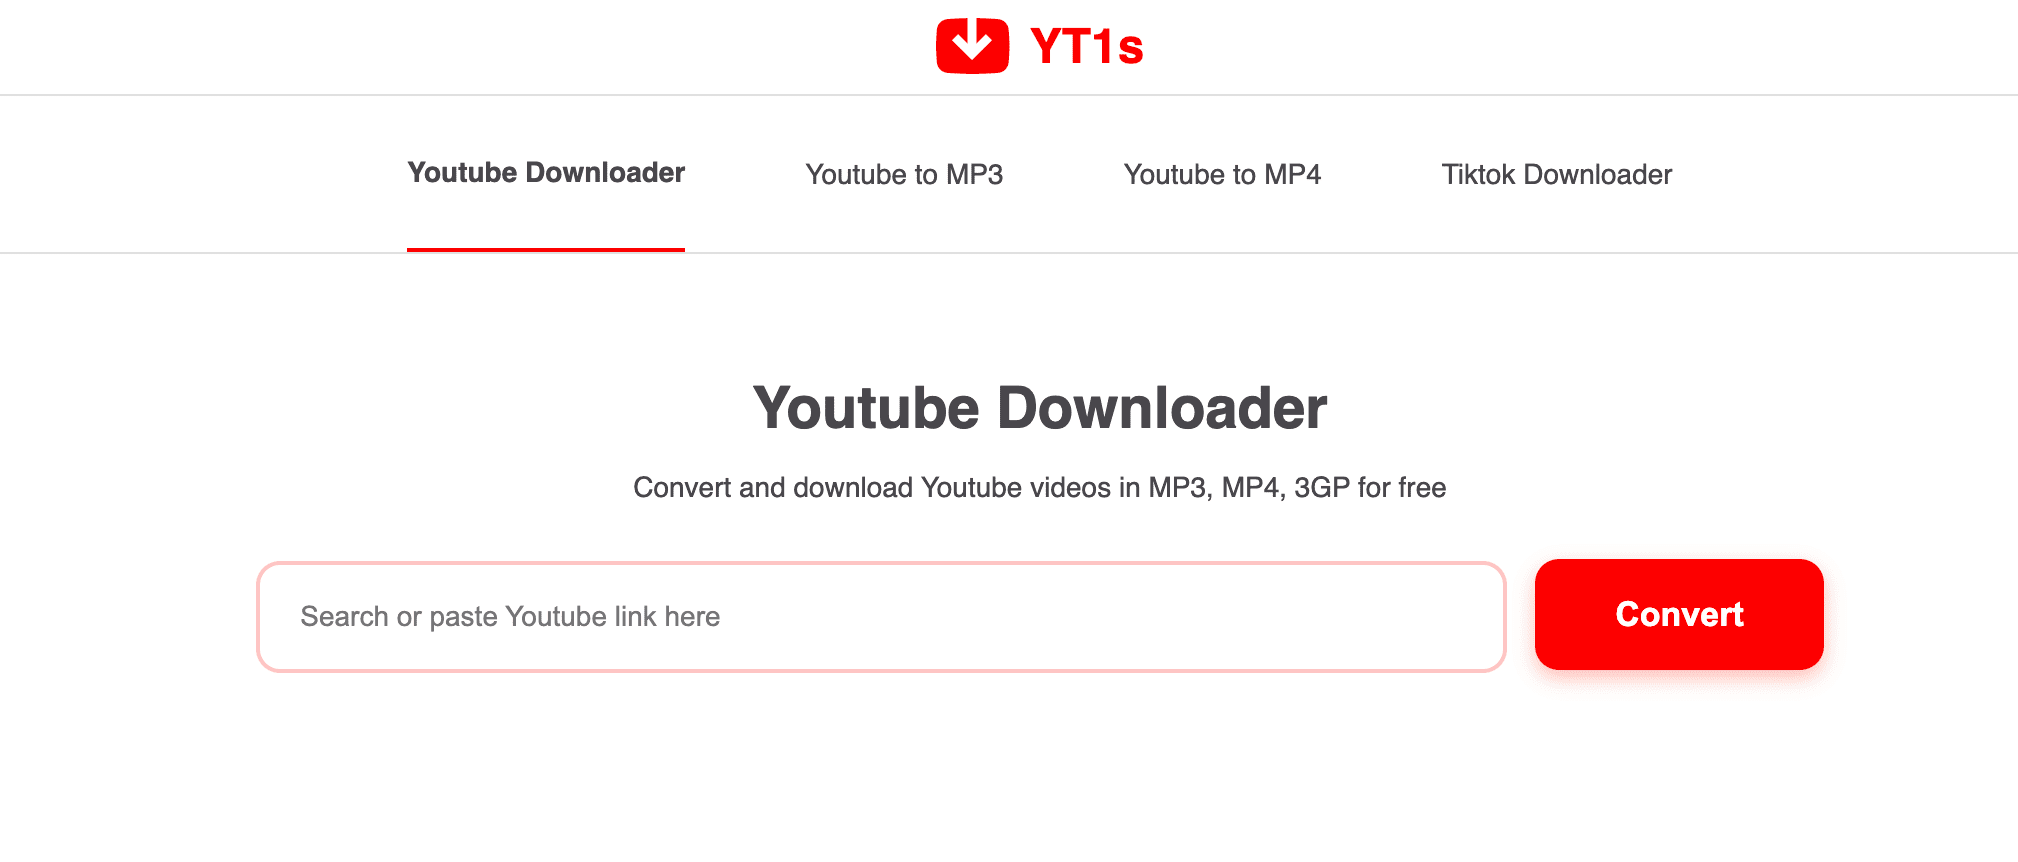 YT1s YouTube Downloader